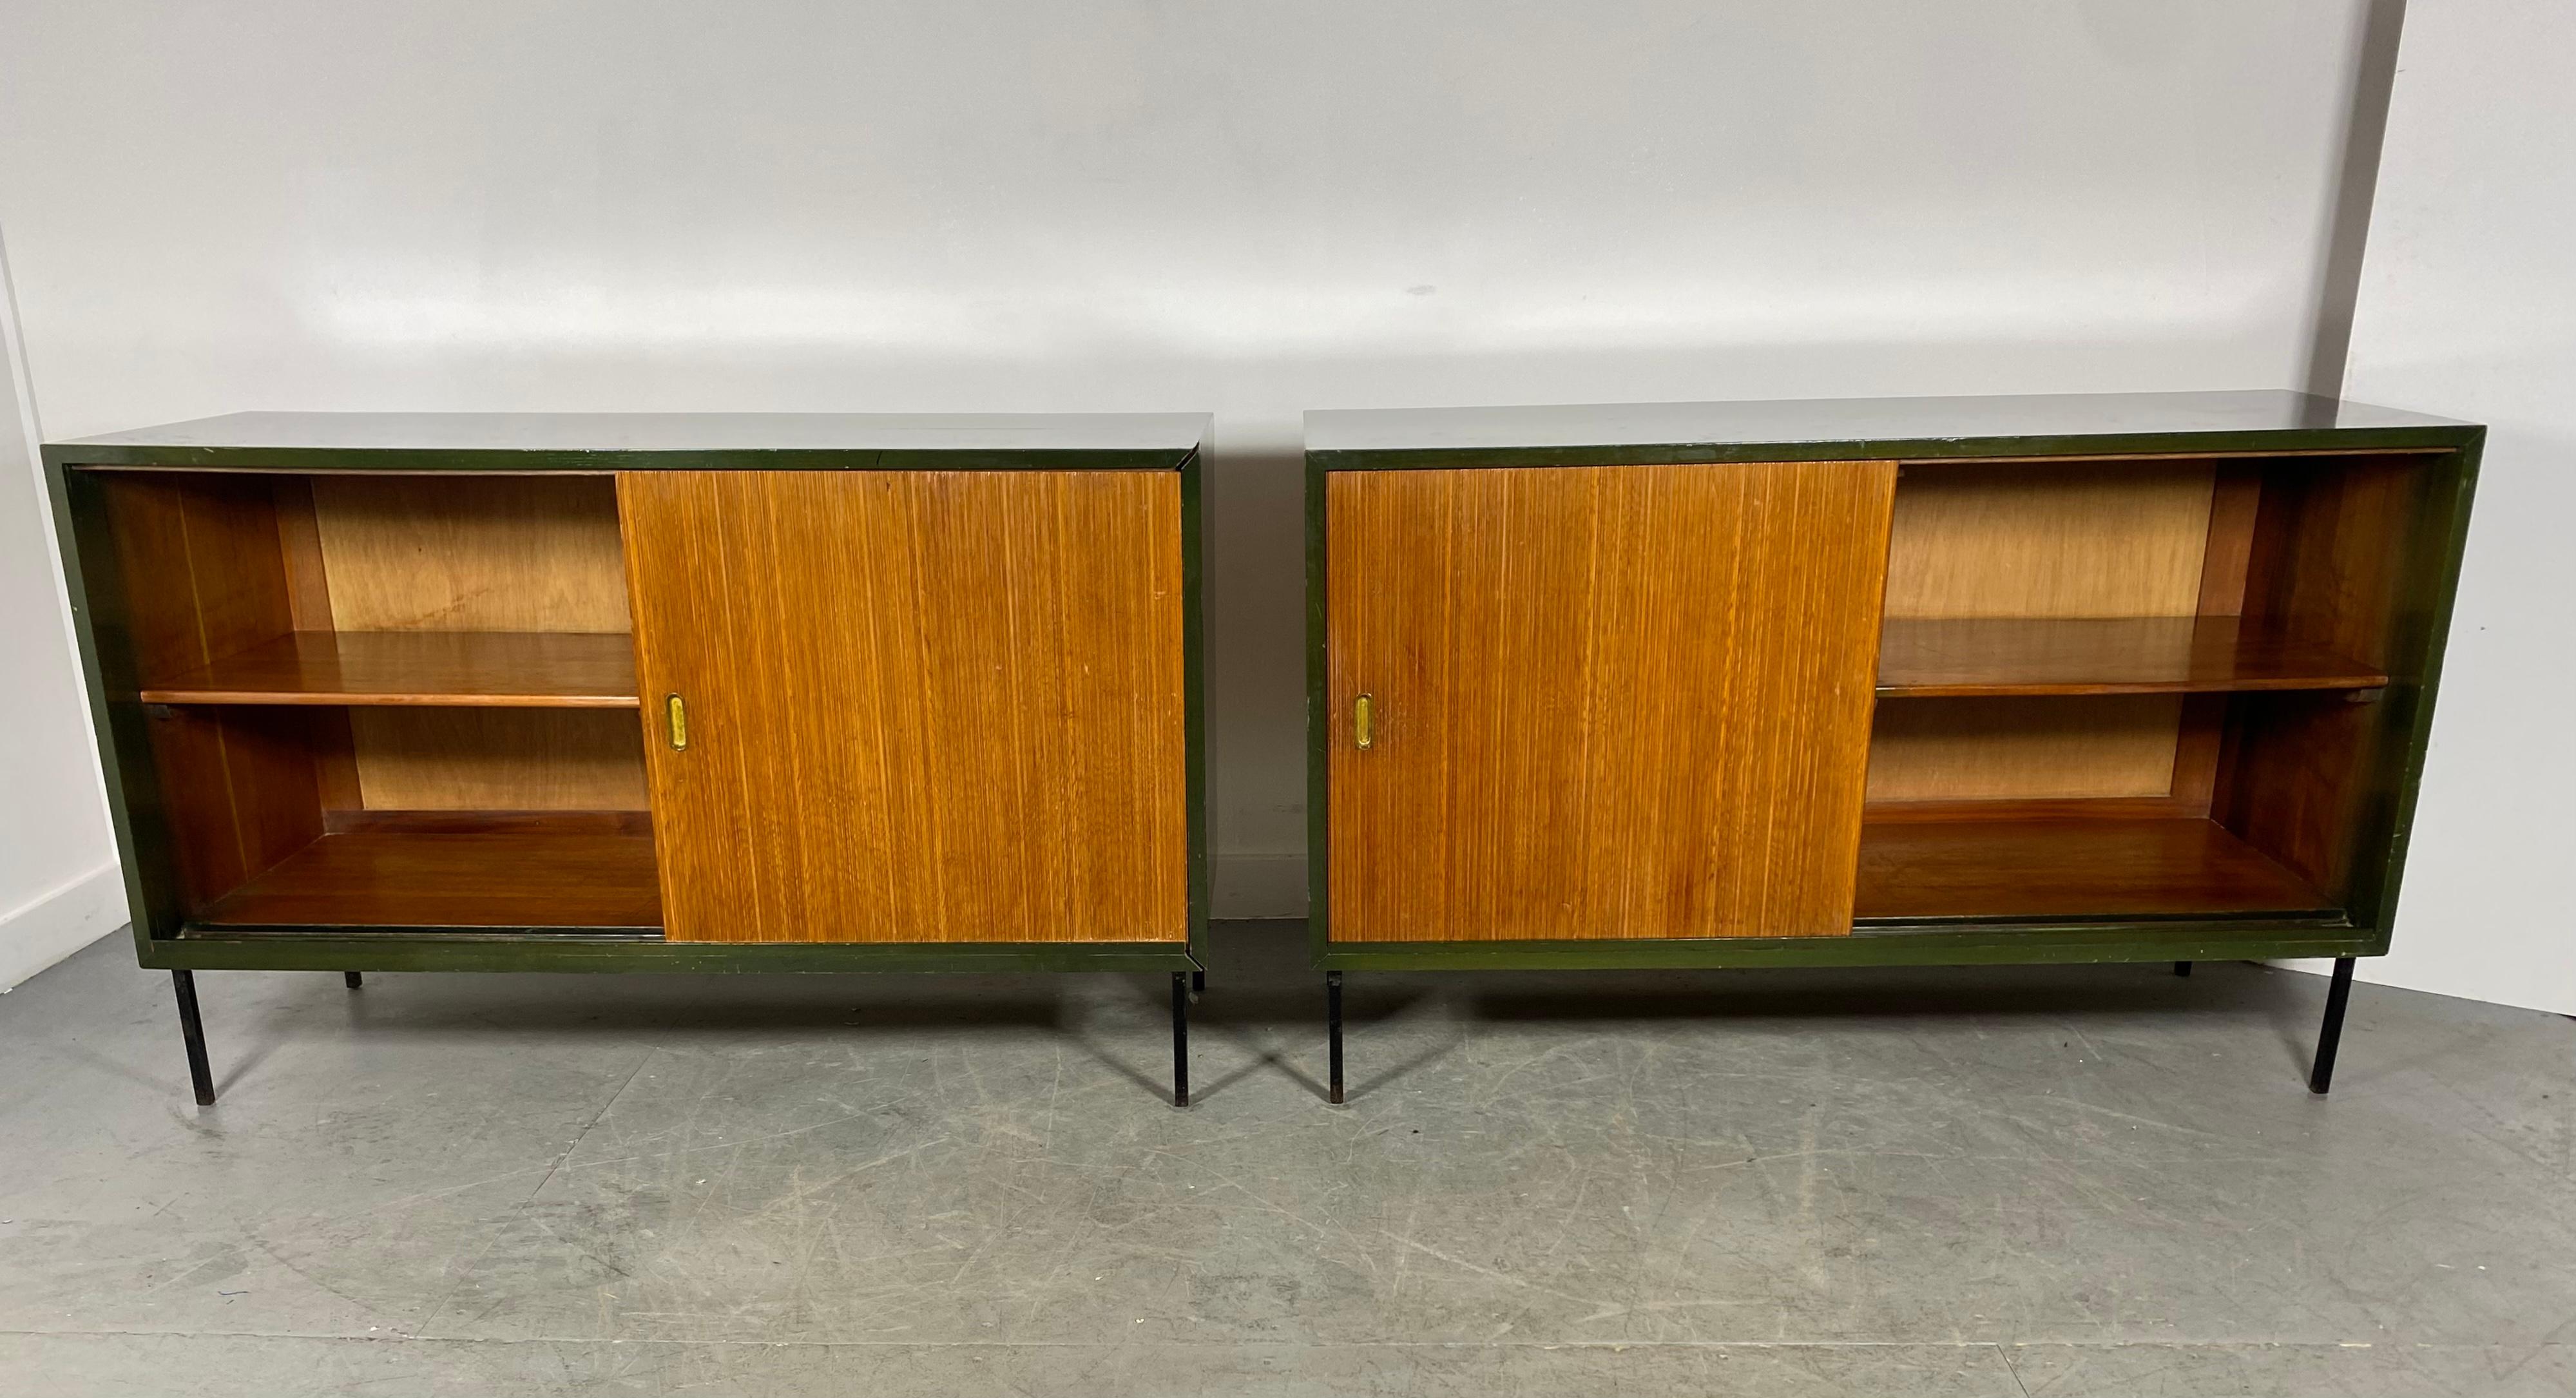 Superbe paire de buffets, armoires et bars secs Unit 'K' conçus par Robin Day dans le cadre de la gamme Interplan pour Hille en 1954, Conserve leurs cadres d'origine en laque verte CUSTOM, portes coulissantes inhabituelles en teck nervuré, pieds